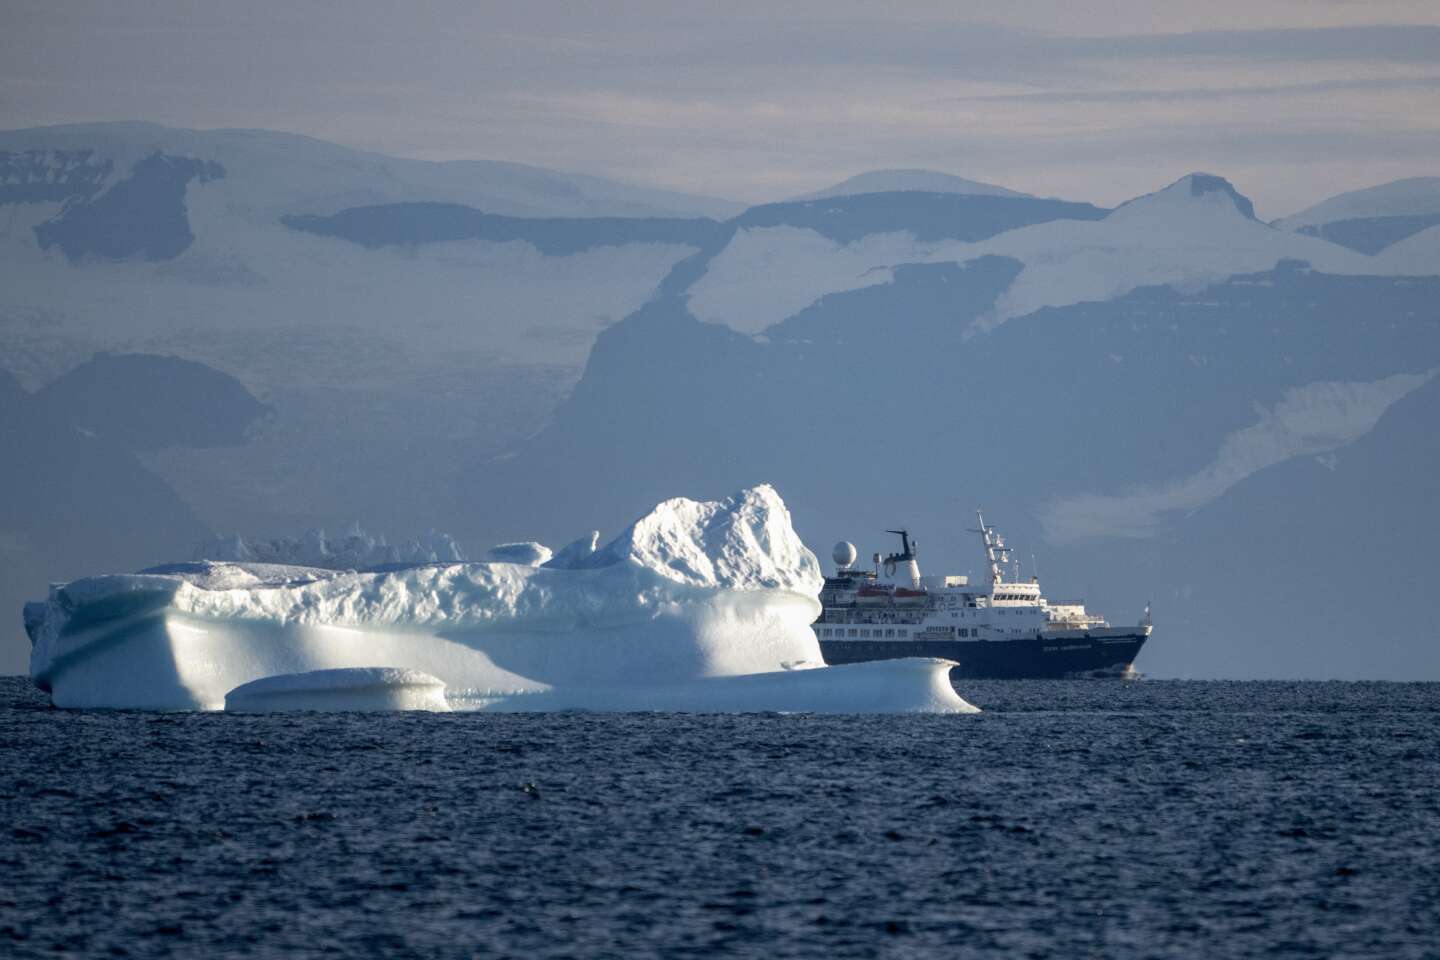 La vogue du tourisme dans les pôles, une menace pour un environnement fragile